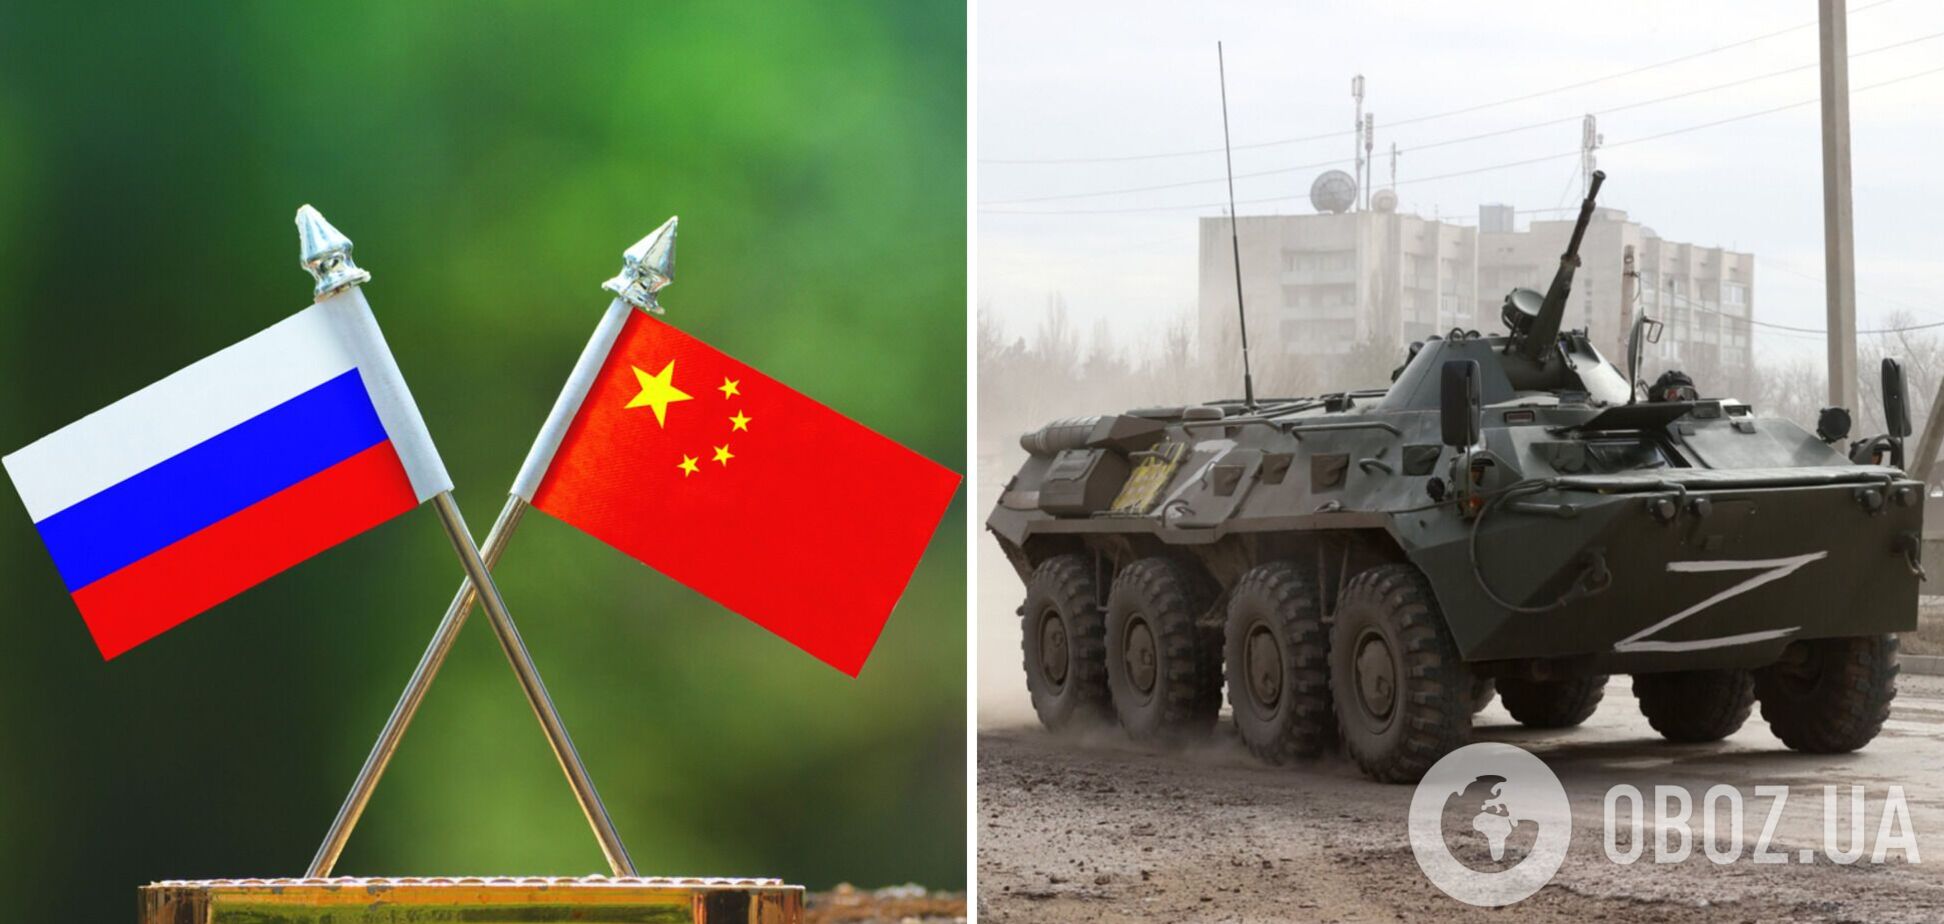 Россия, напавшая на Украину, попросила у Китая военную помощь – Financial Times